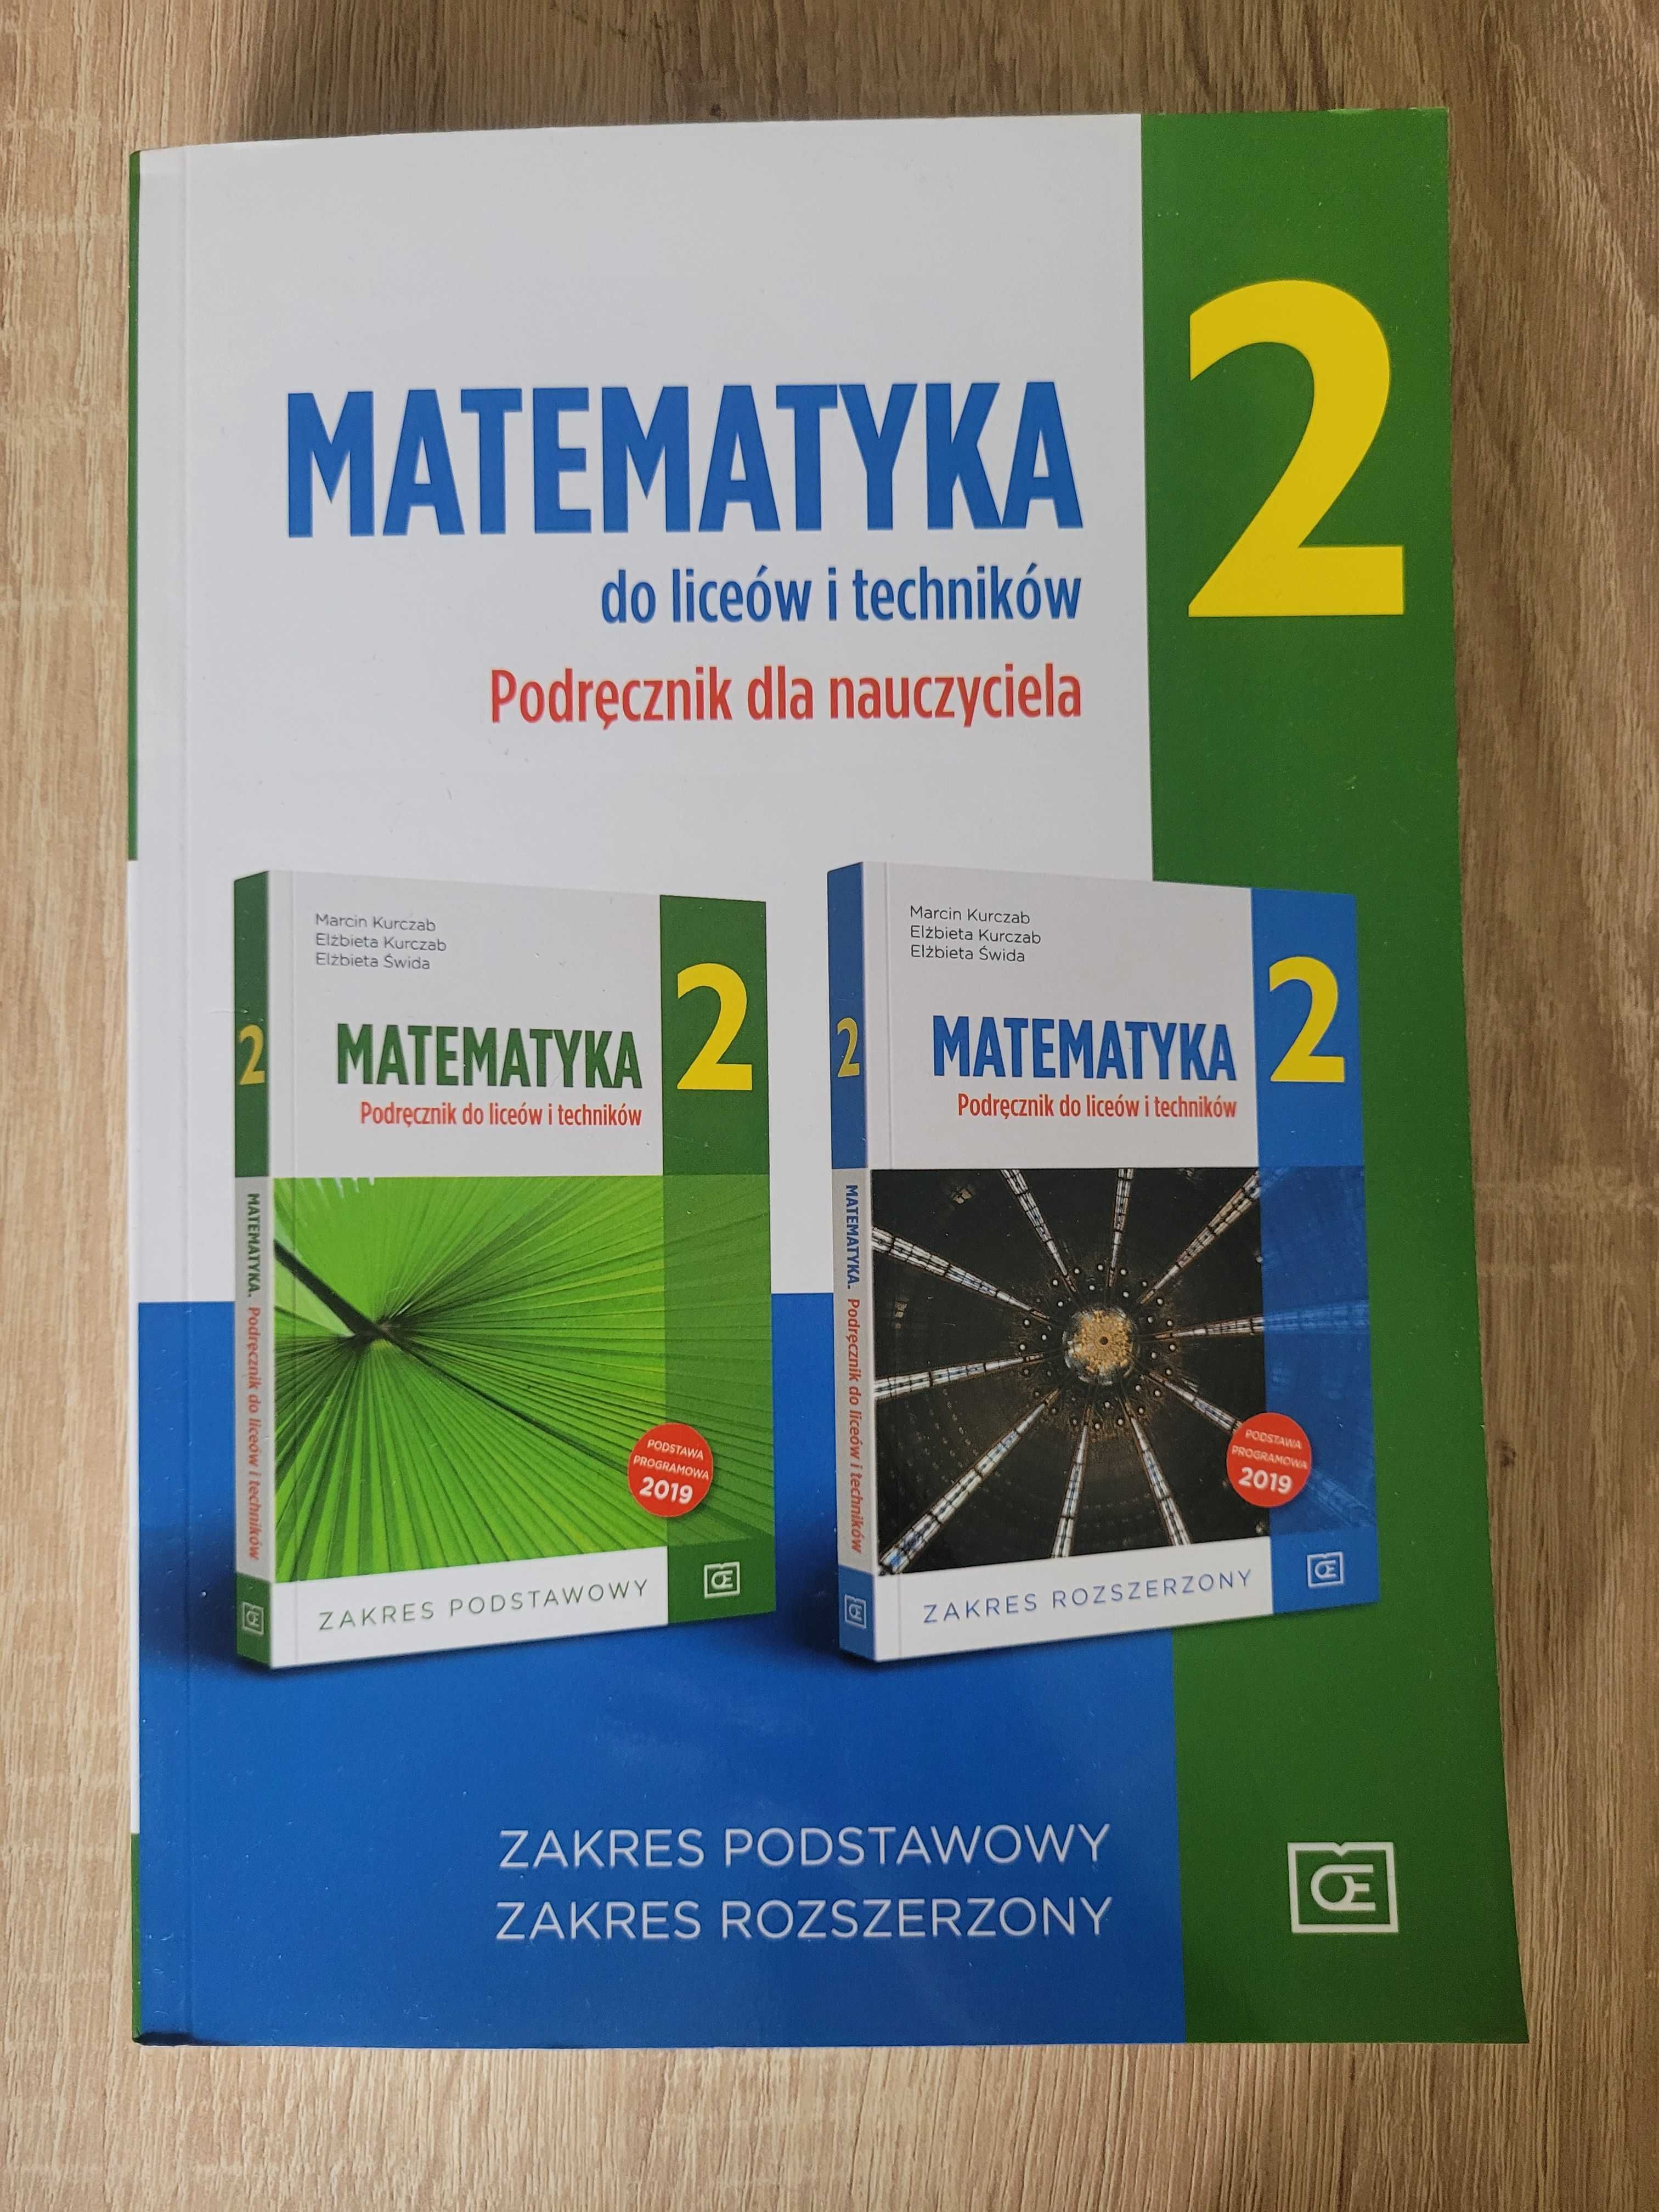 Nowy Podręcznik dla nauczyciela matematyka 2, pazdro